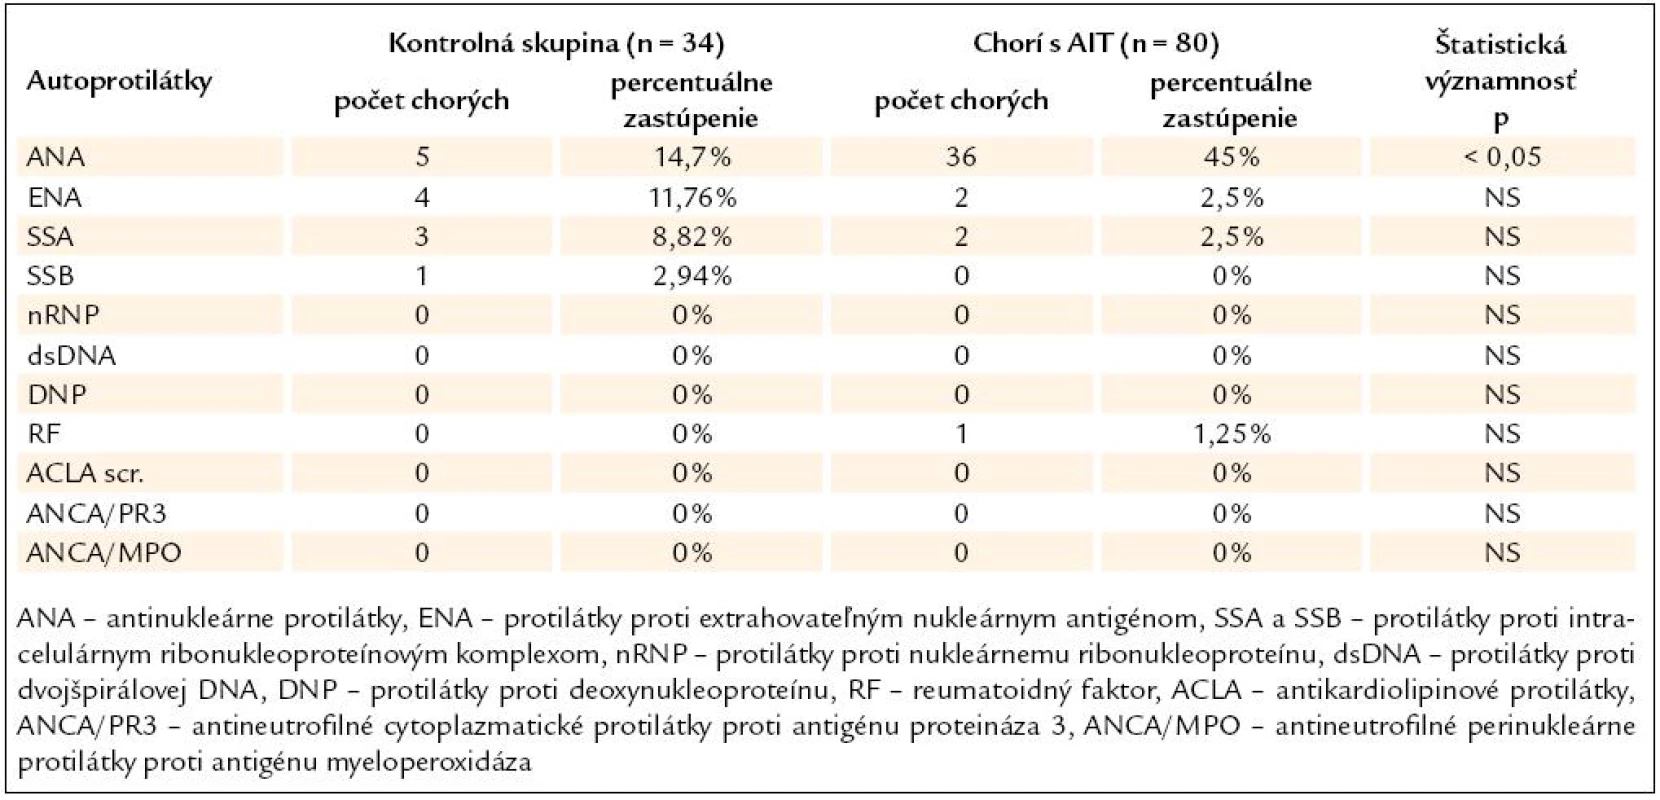 Výskyt orgánovo-nešpecifických autoprotilátok u chorých s AIT a v KS.